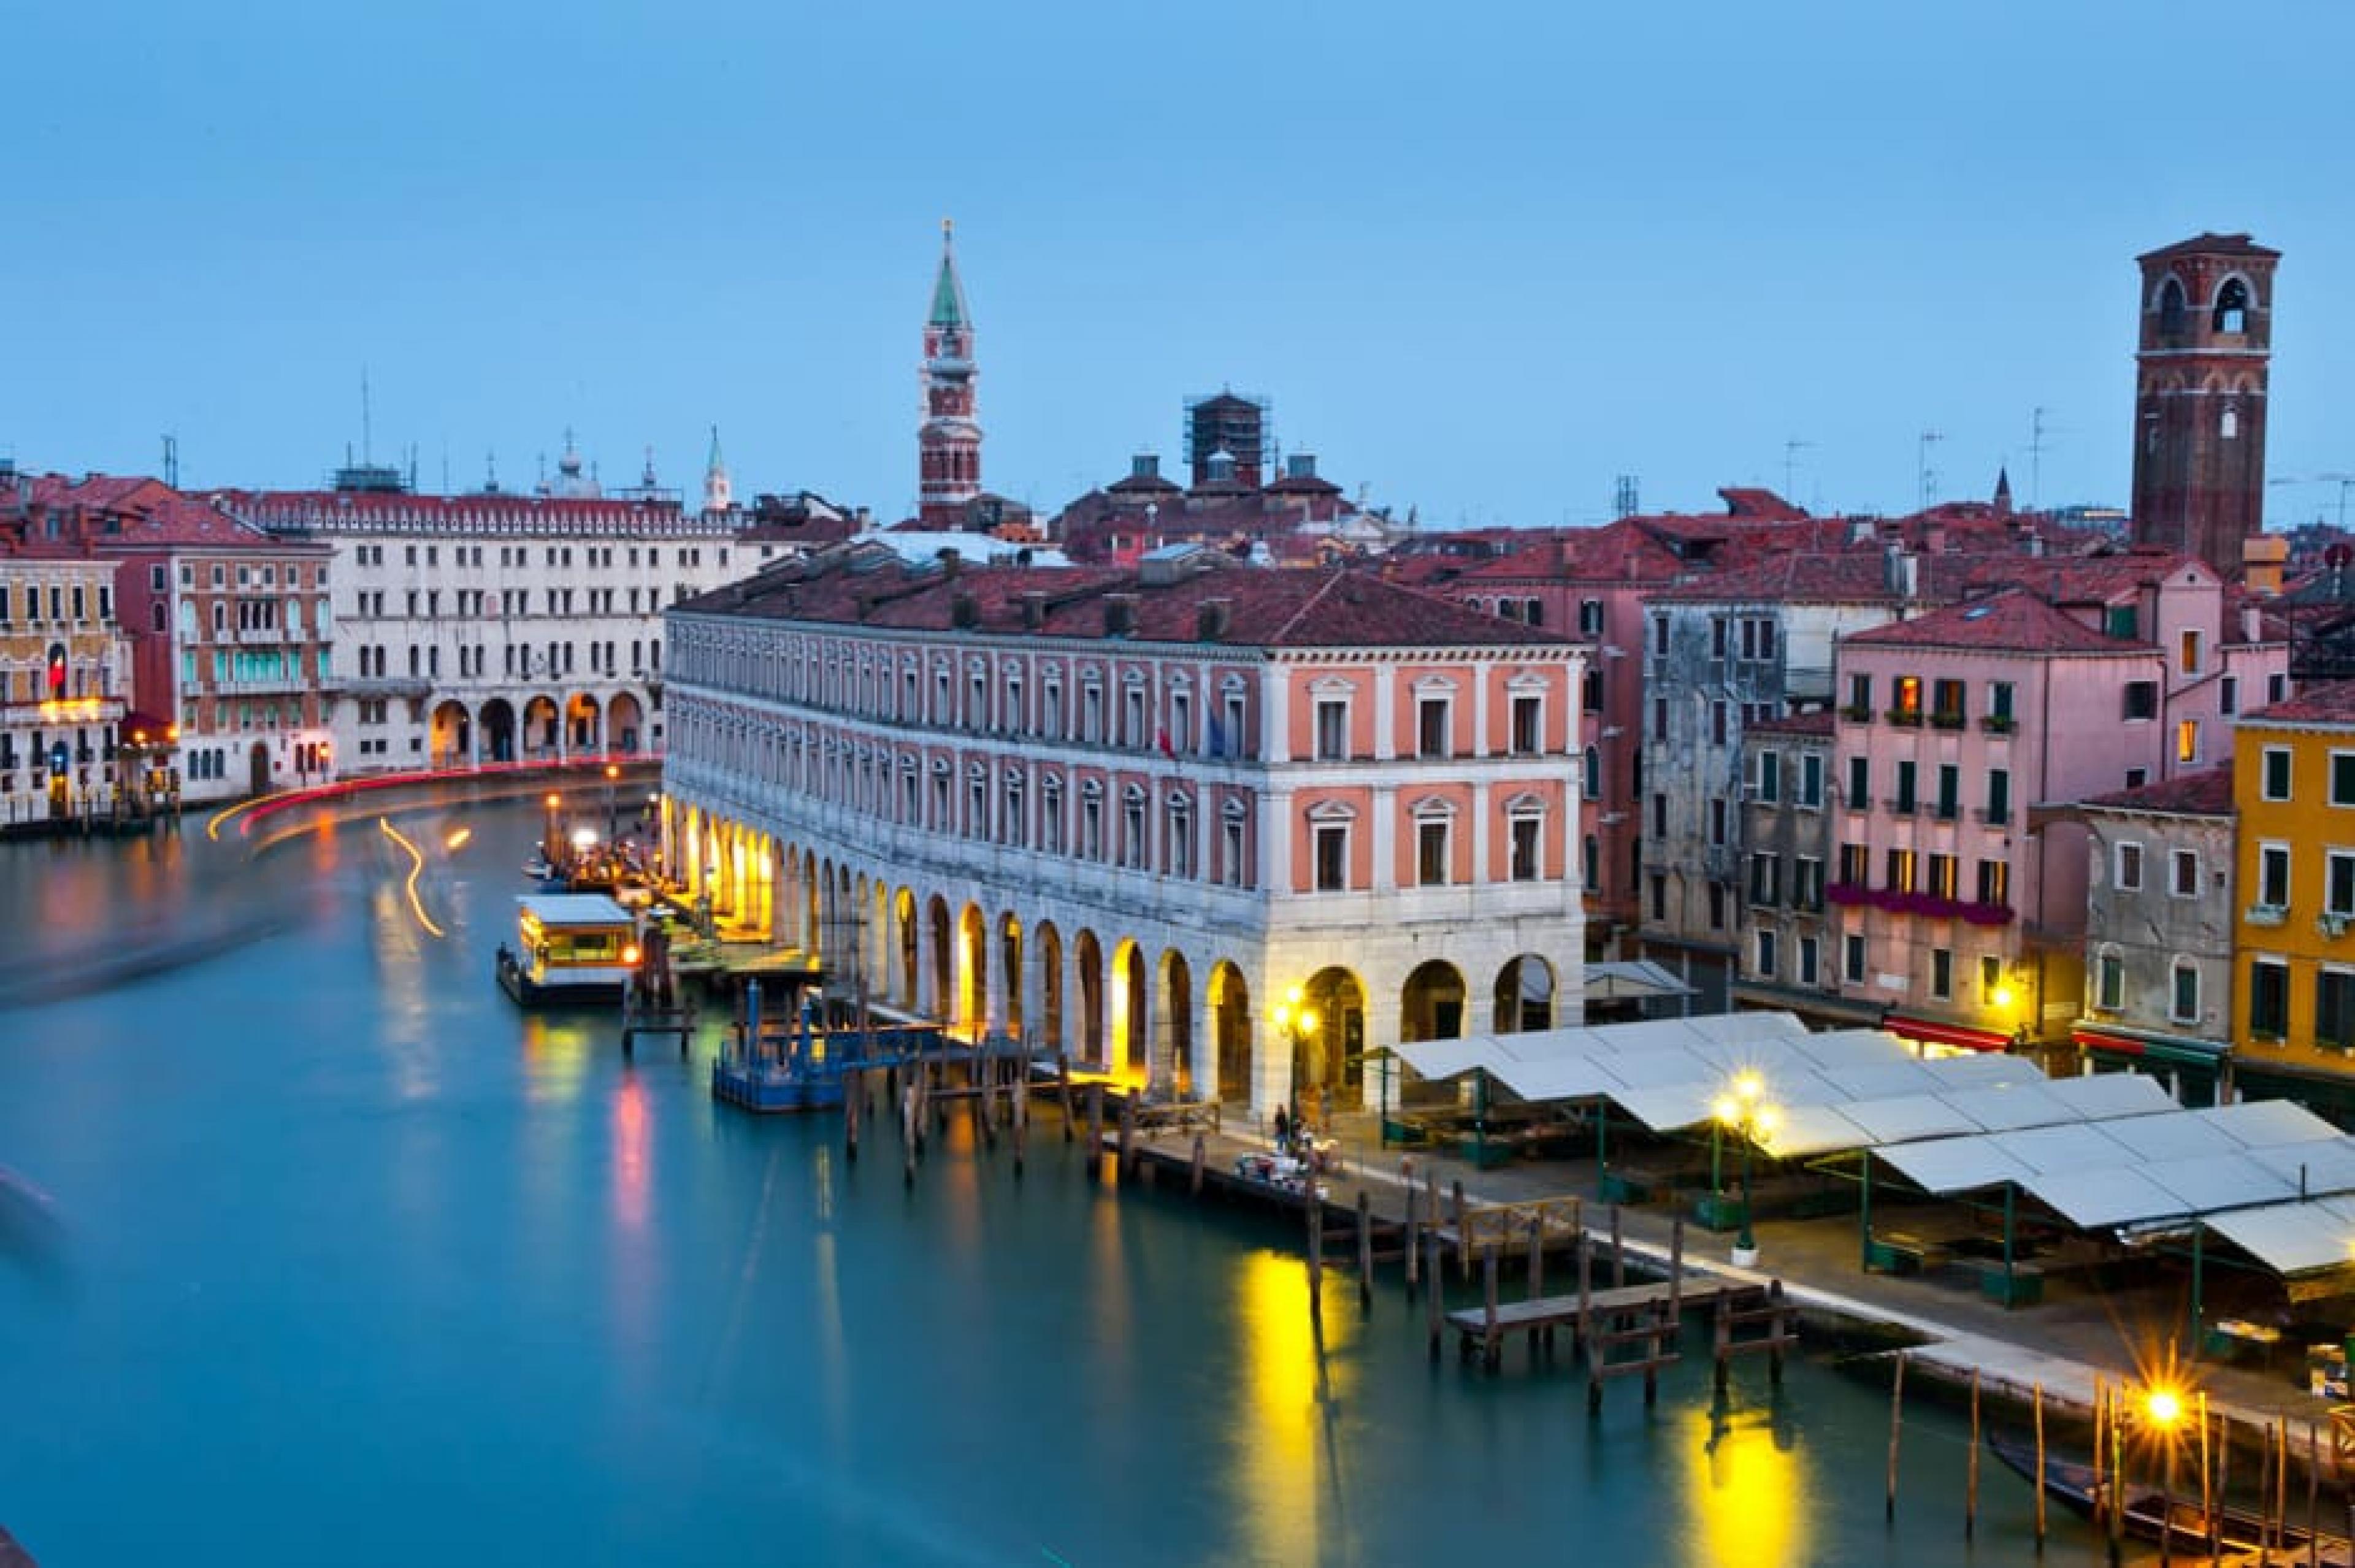 View at Evening - Ca’ Sagredo Hotel, Venice, Italy - Courtesy Randy Jay Braun